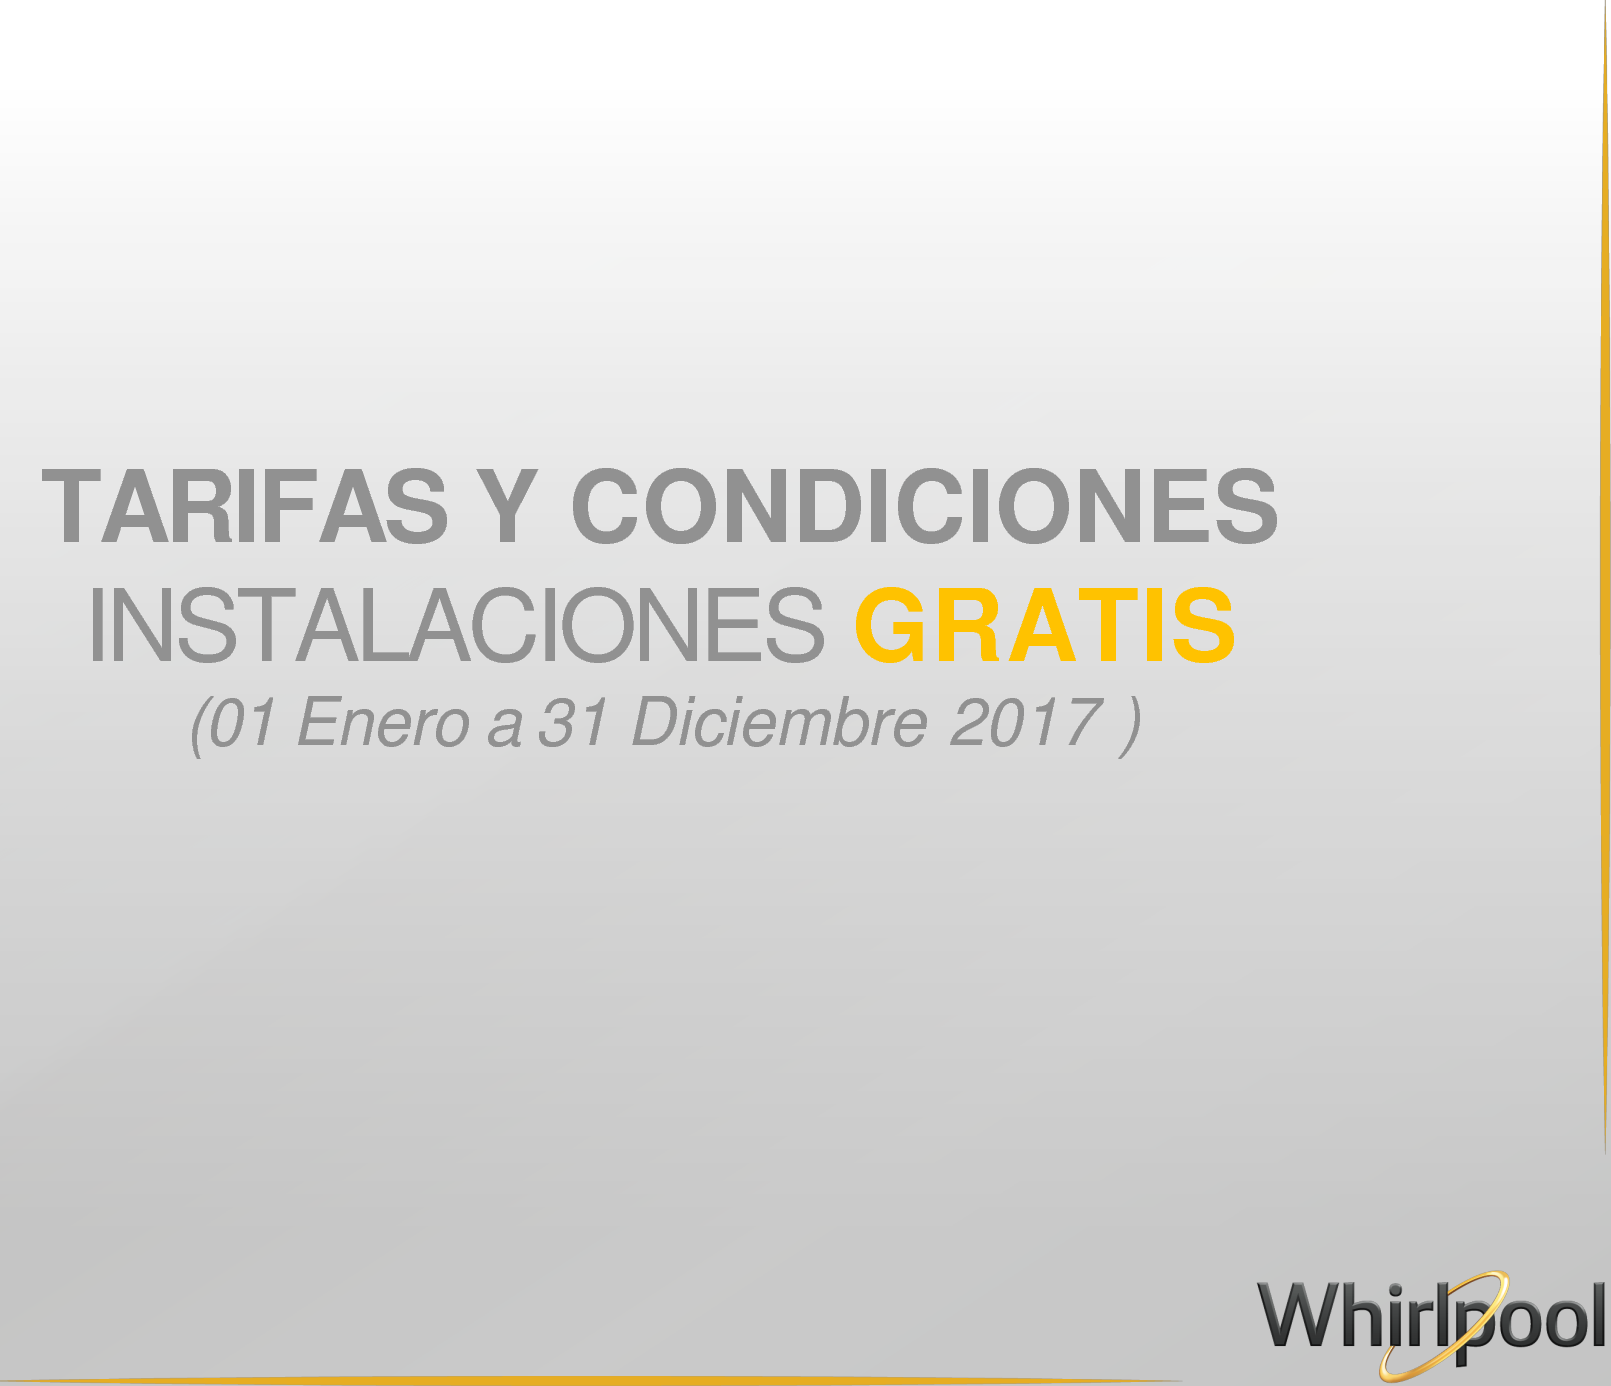 Page 1 of 12 - Whirlpool Tarifas-Y-Condiciones-Instalaciones-Gratis-2017-V2 TARIFAS Y CONDICIONES INSTALACIONES GRATIS User Manual